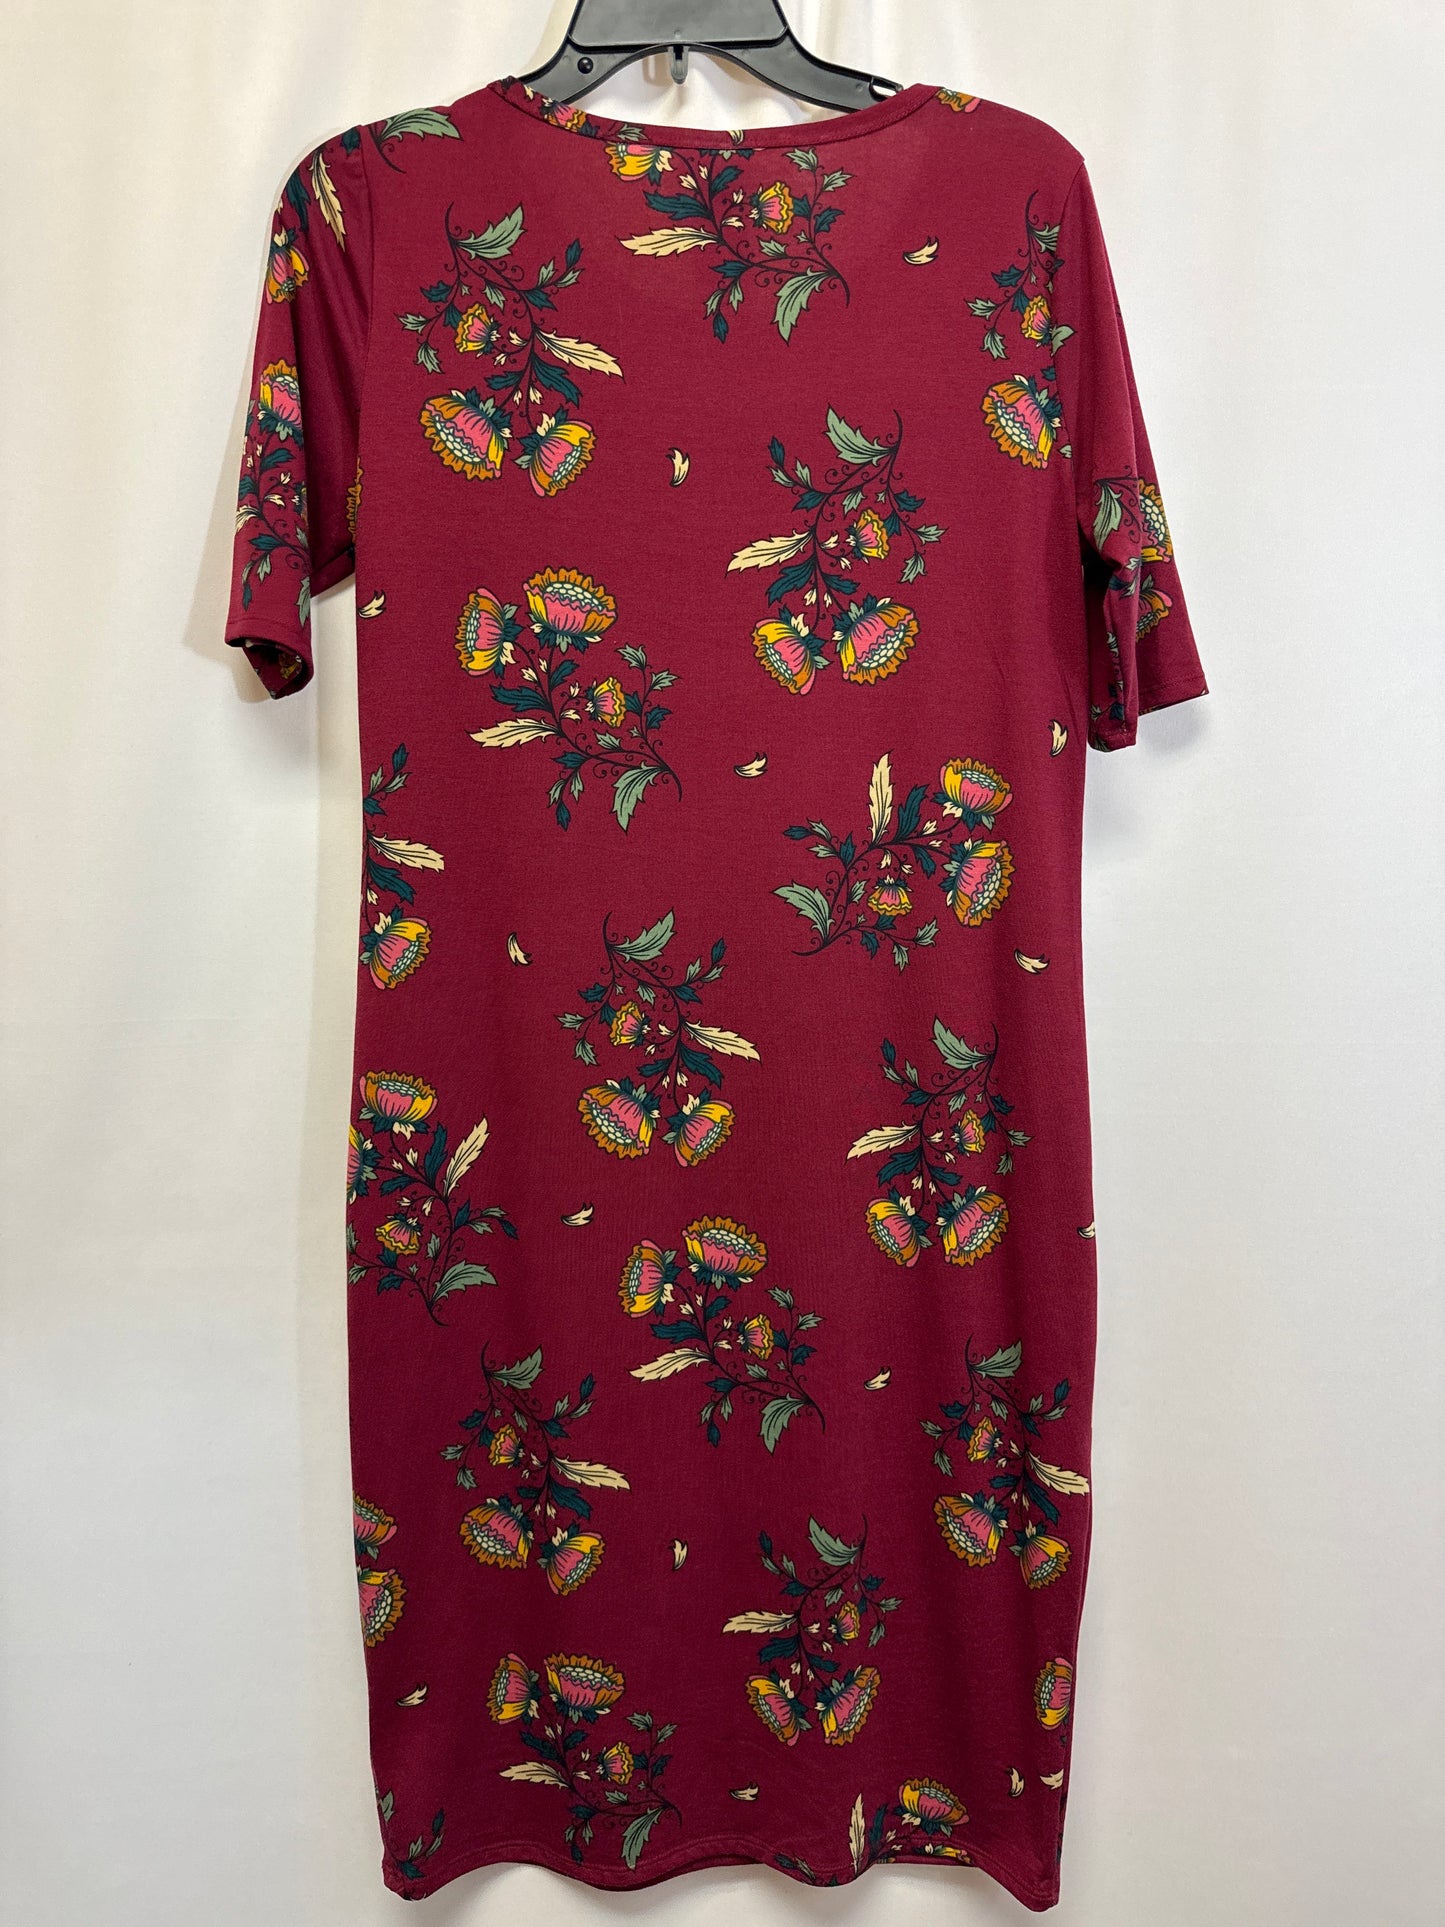 Dress Casual Midi By Lularoe  Size: M